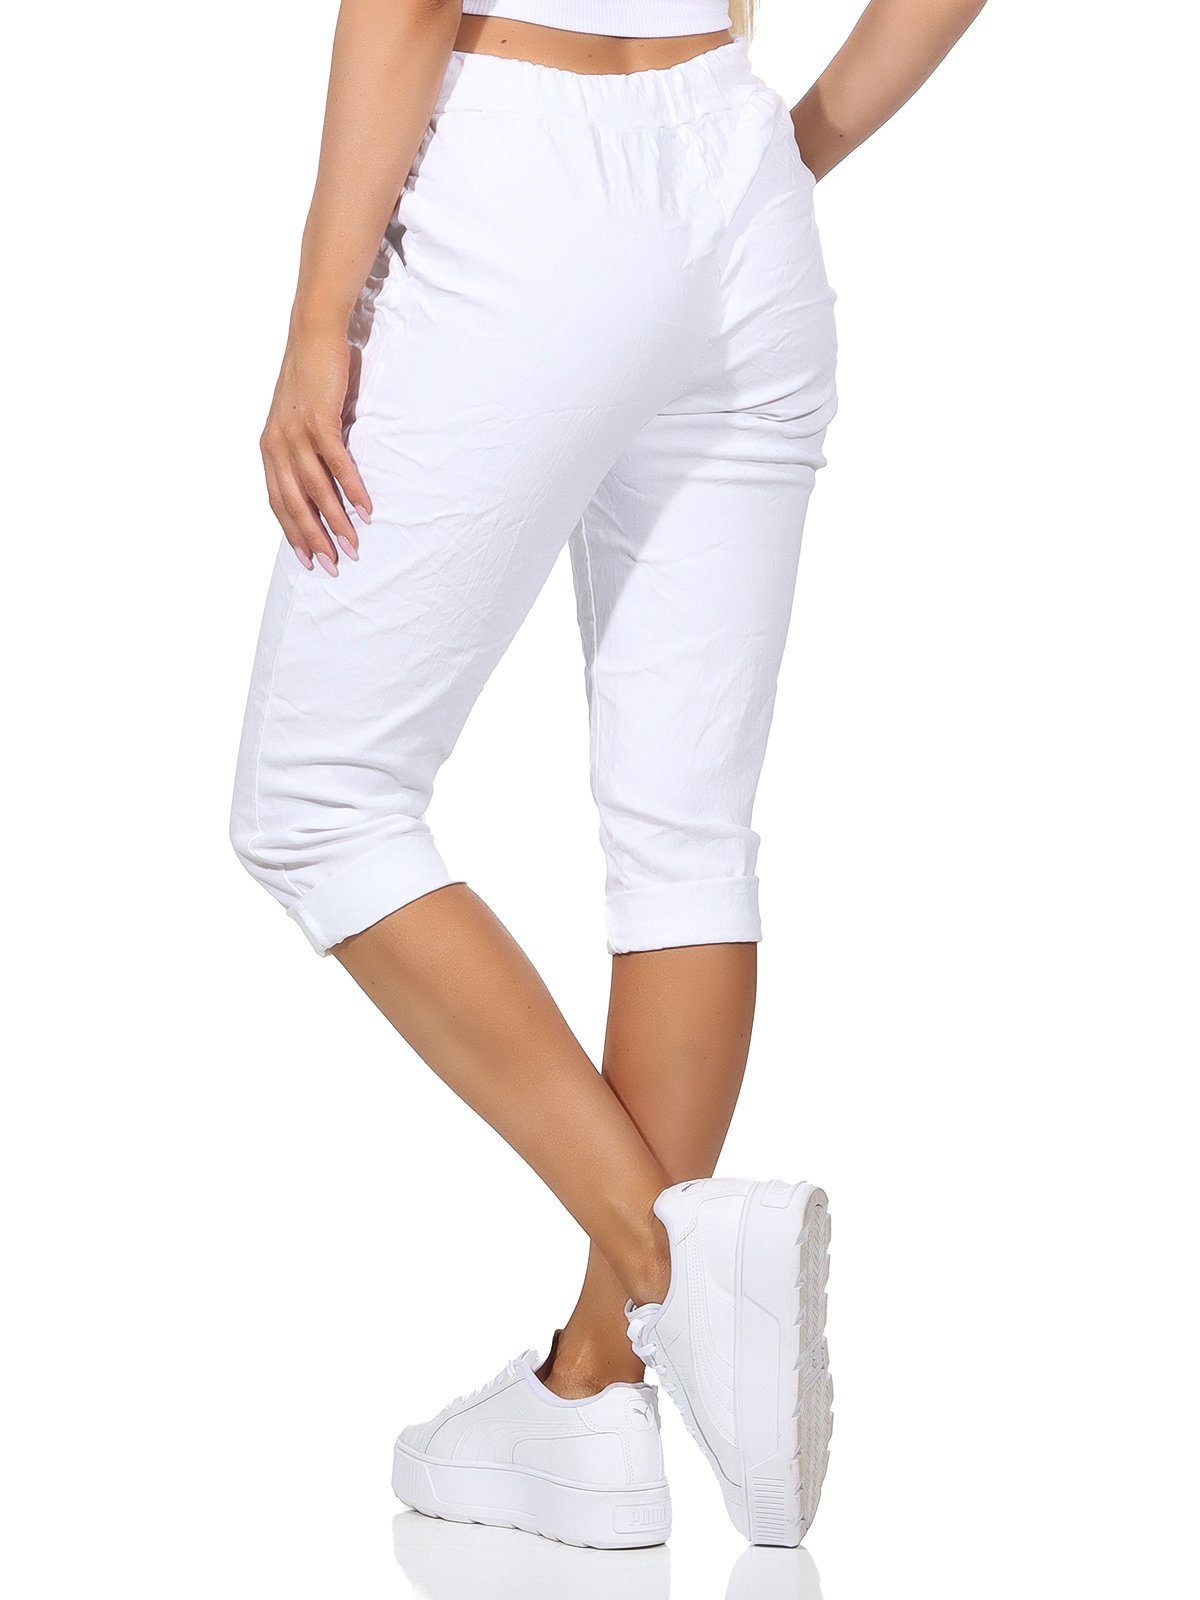 Capri Farben, 36-44 in Taschen Damen Bermuda Aurela Jeans Kordelzug, Damenmode Weiß 7/8-Hose Kurze und Hose Sommerhose sommerlichen